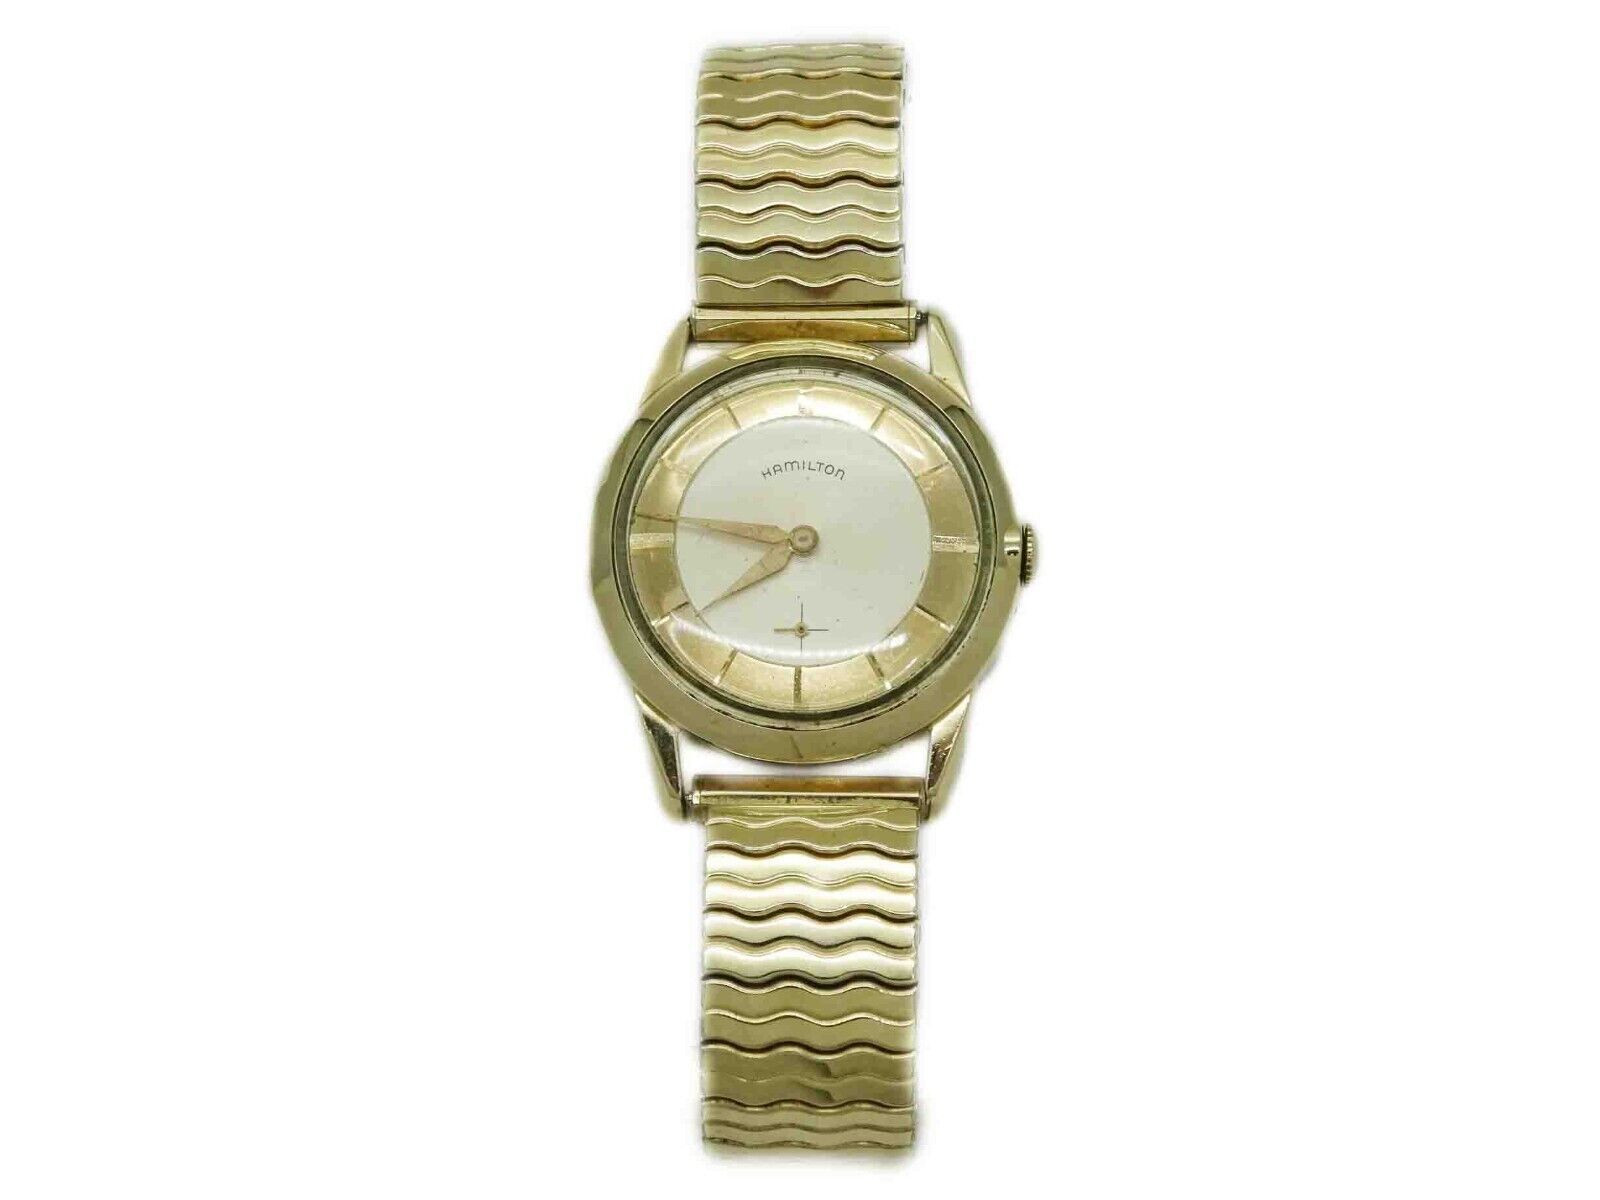 Hamilton Swiss Wristwatch 673, As Is - $99.00